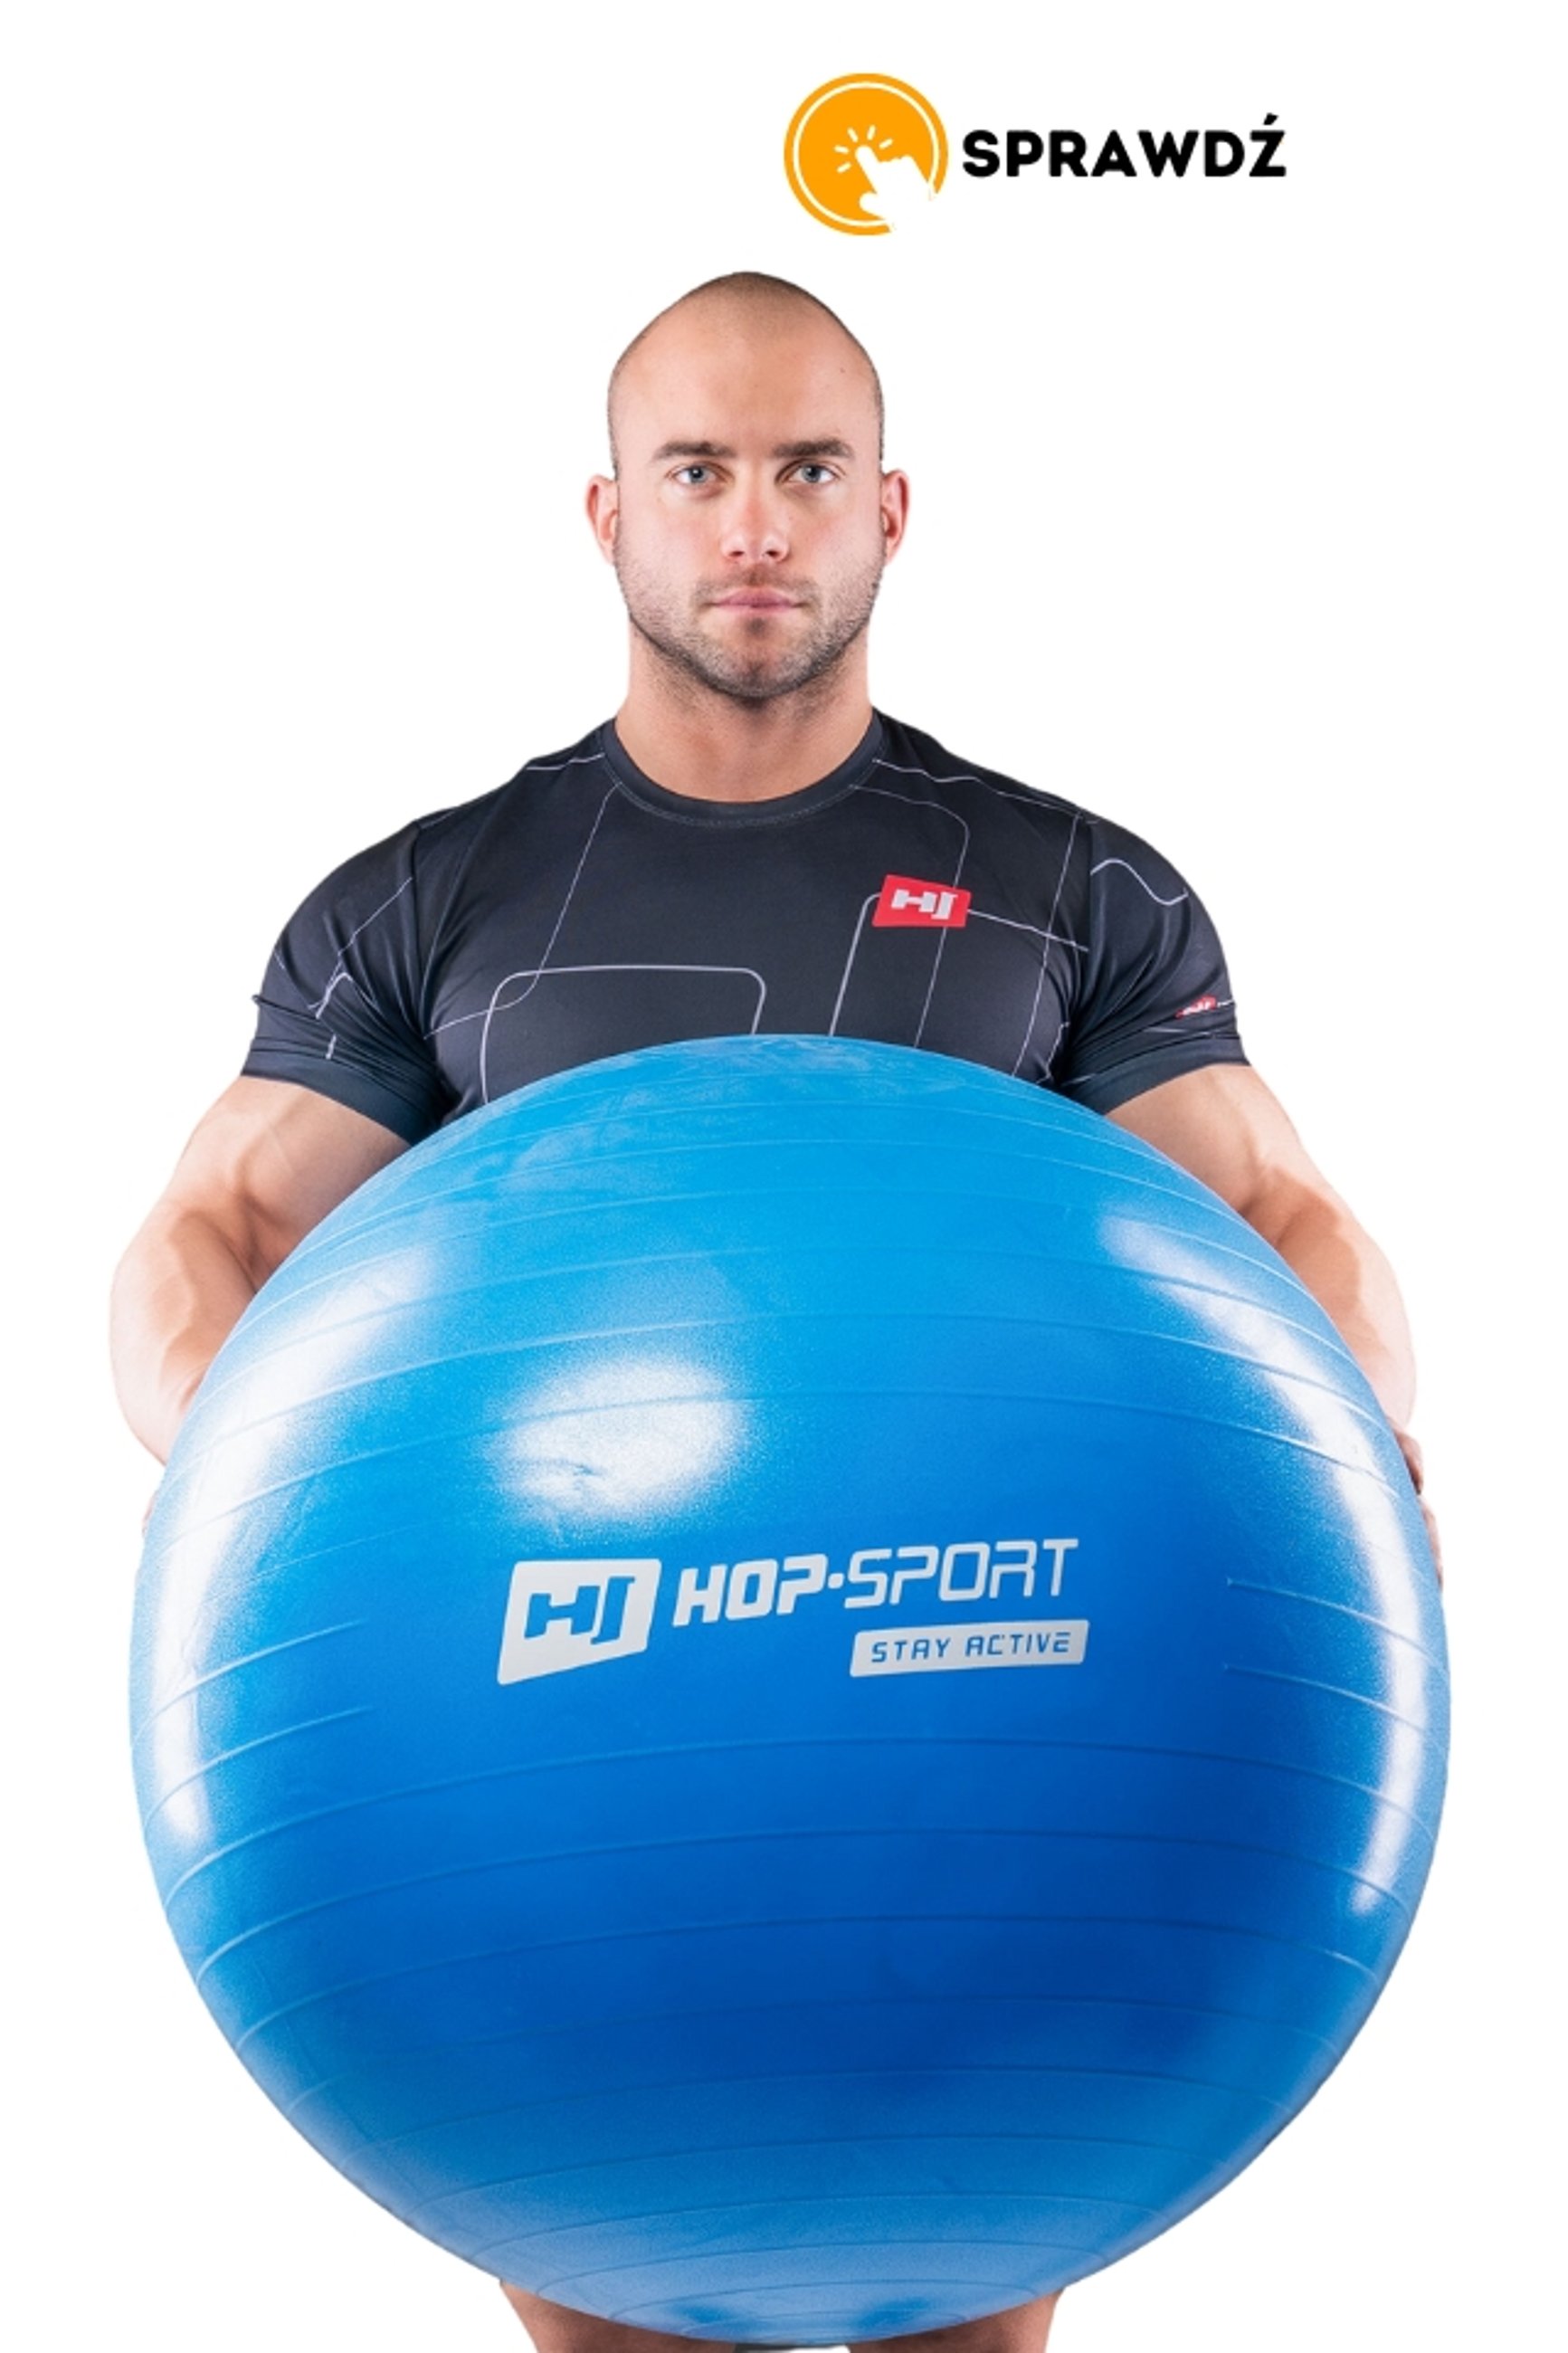 model trzymający piłkę gimnastyczną Hop-Sport niebieską